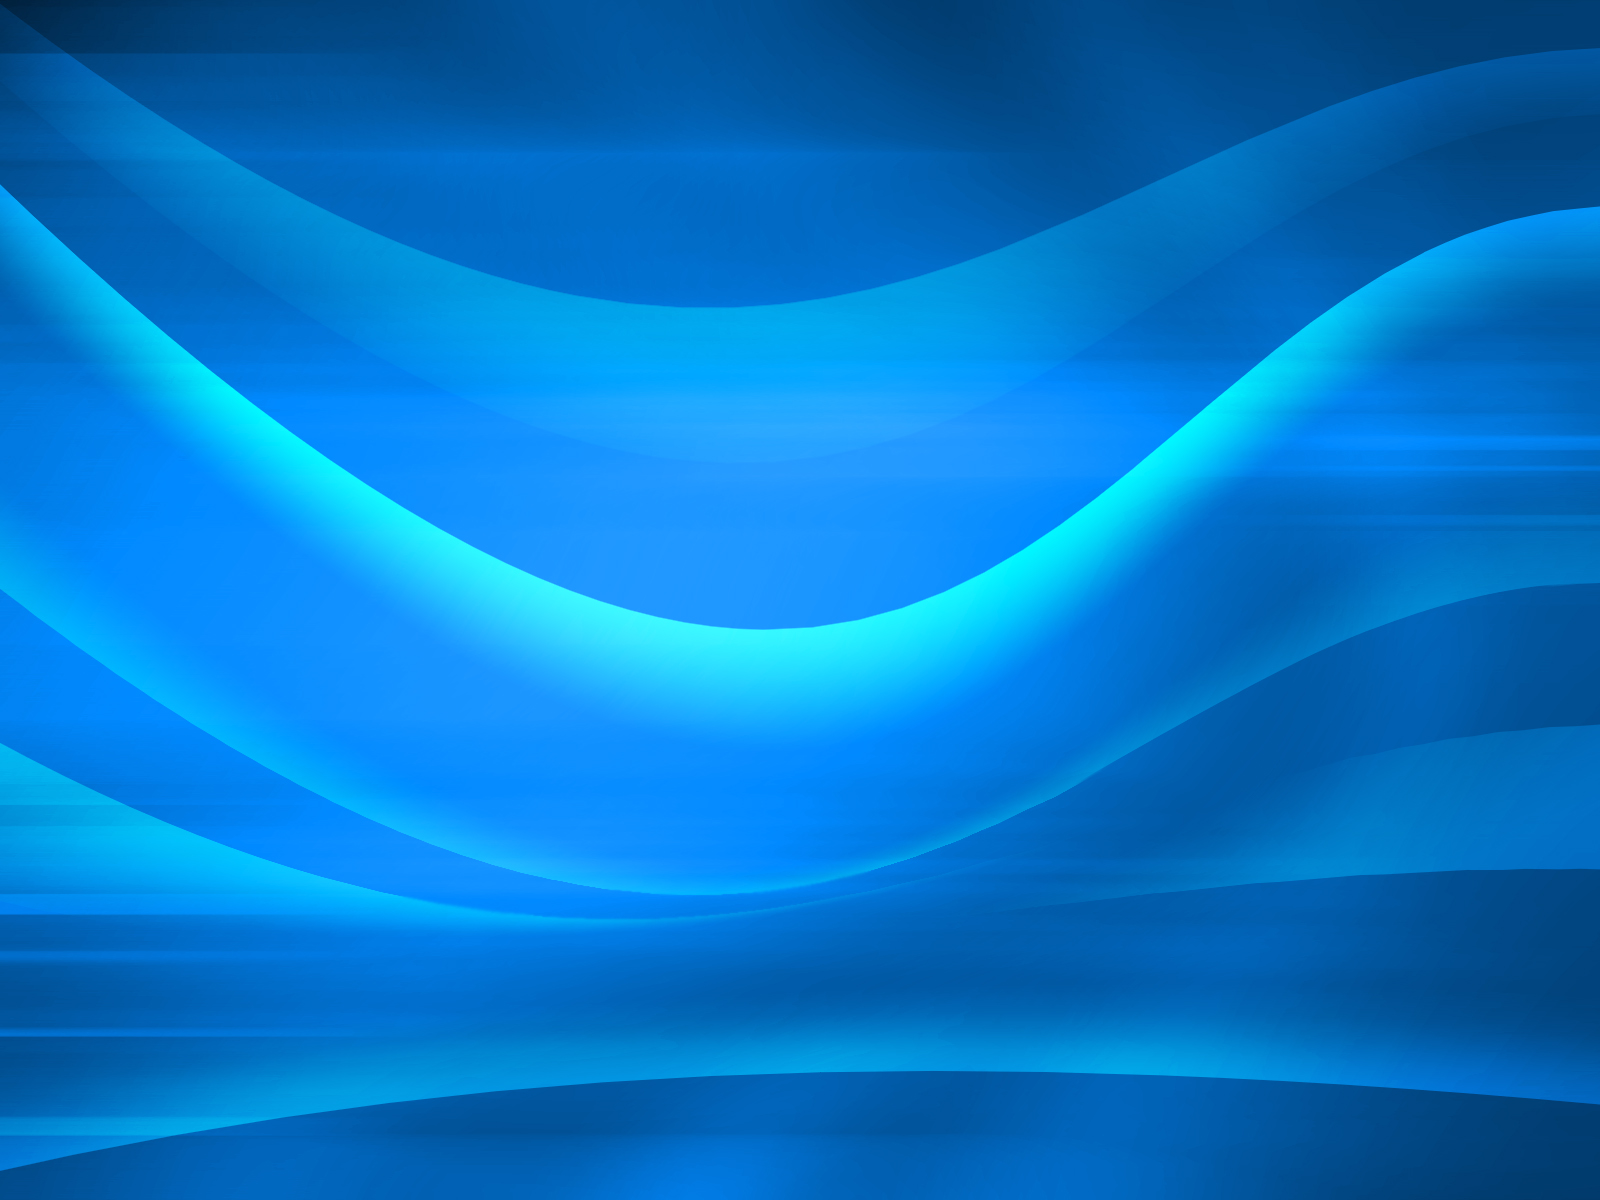 Blue Waves Wallpaper 3546 1600 x 1200   WallpaperLayercom